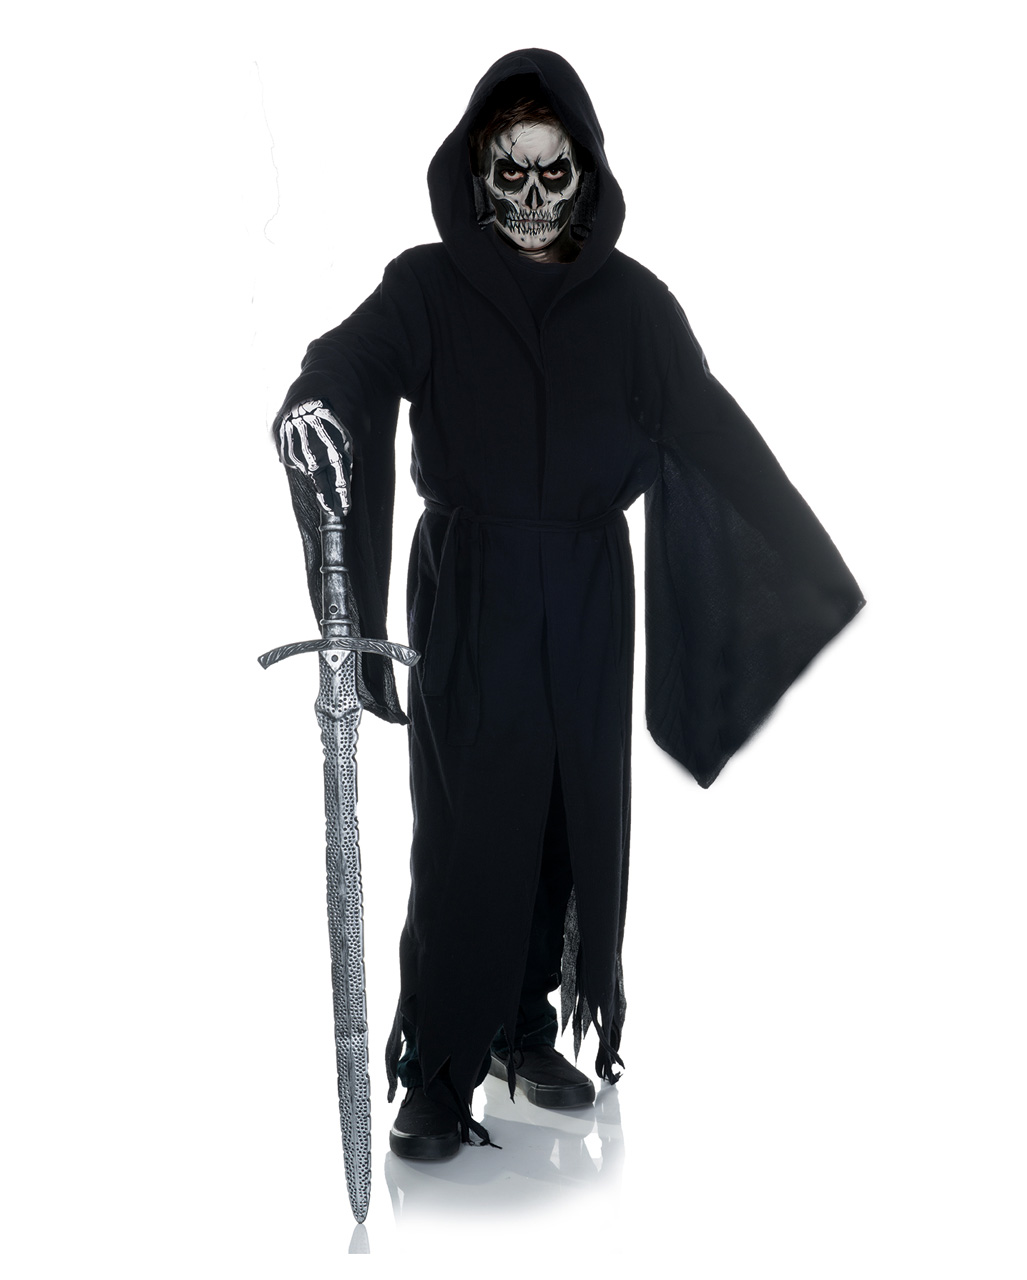 Kinder Halloween Kutte Gewand Sensenmann Kostüm Geist Umhang Grim Reaper Robe 